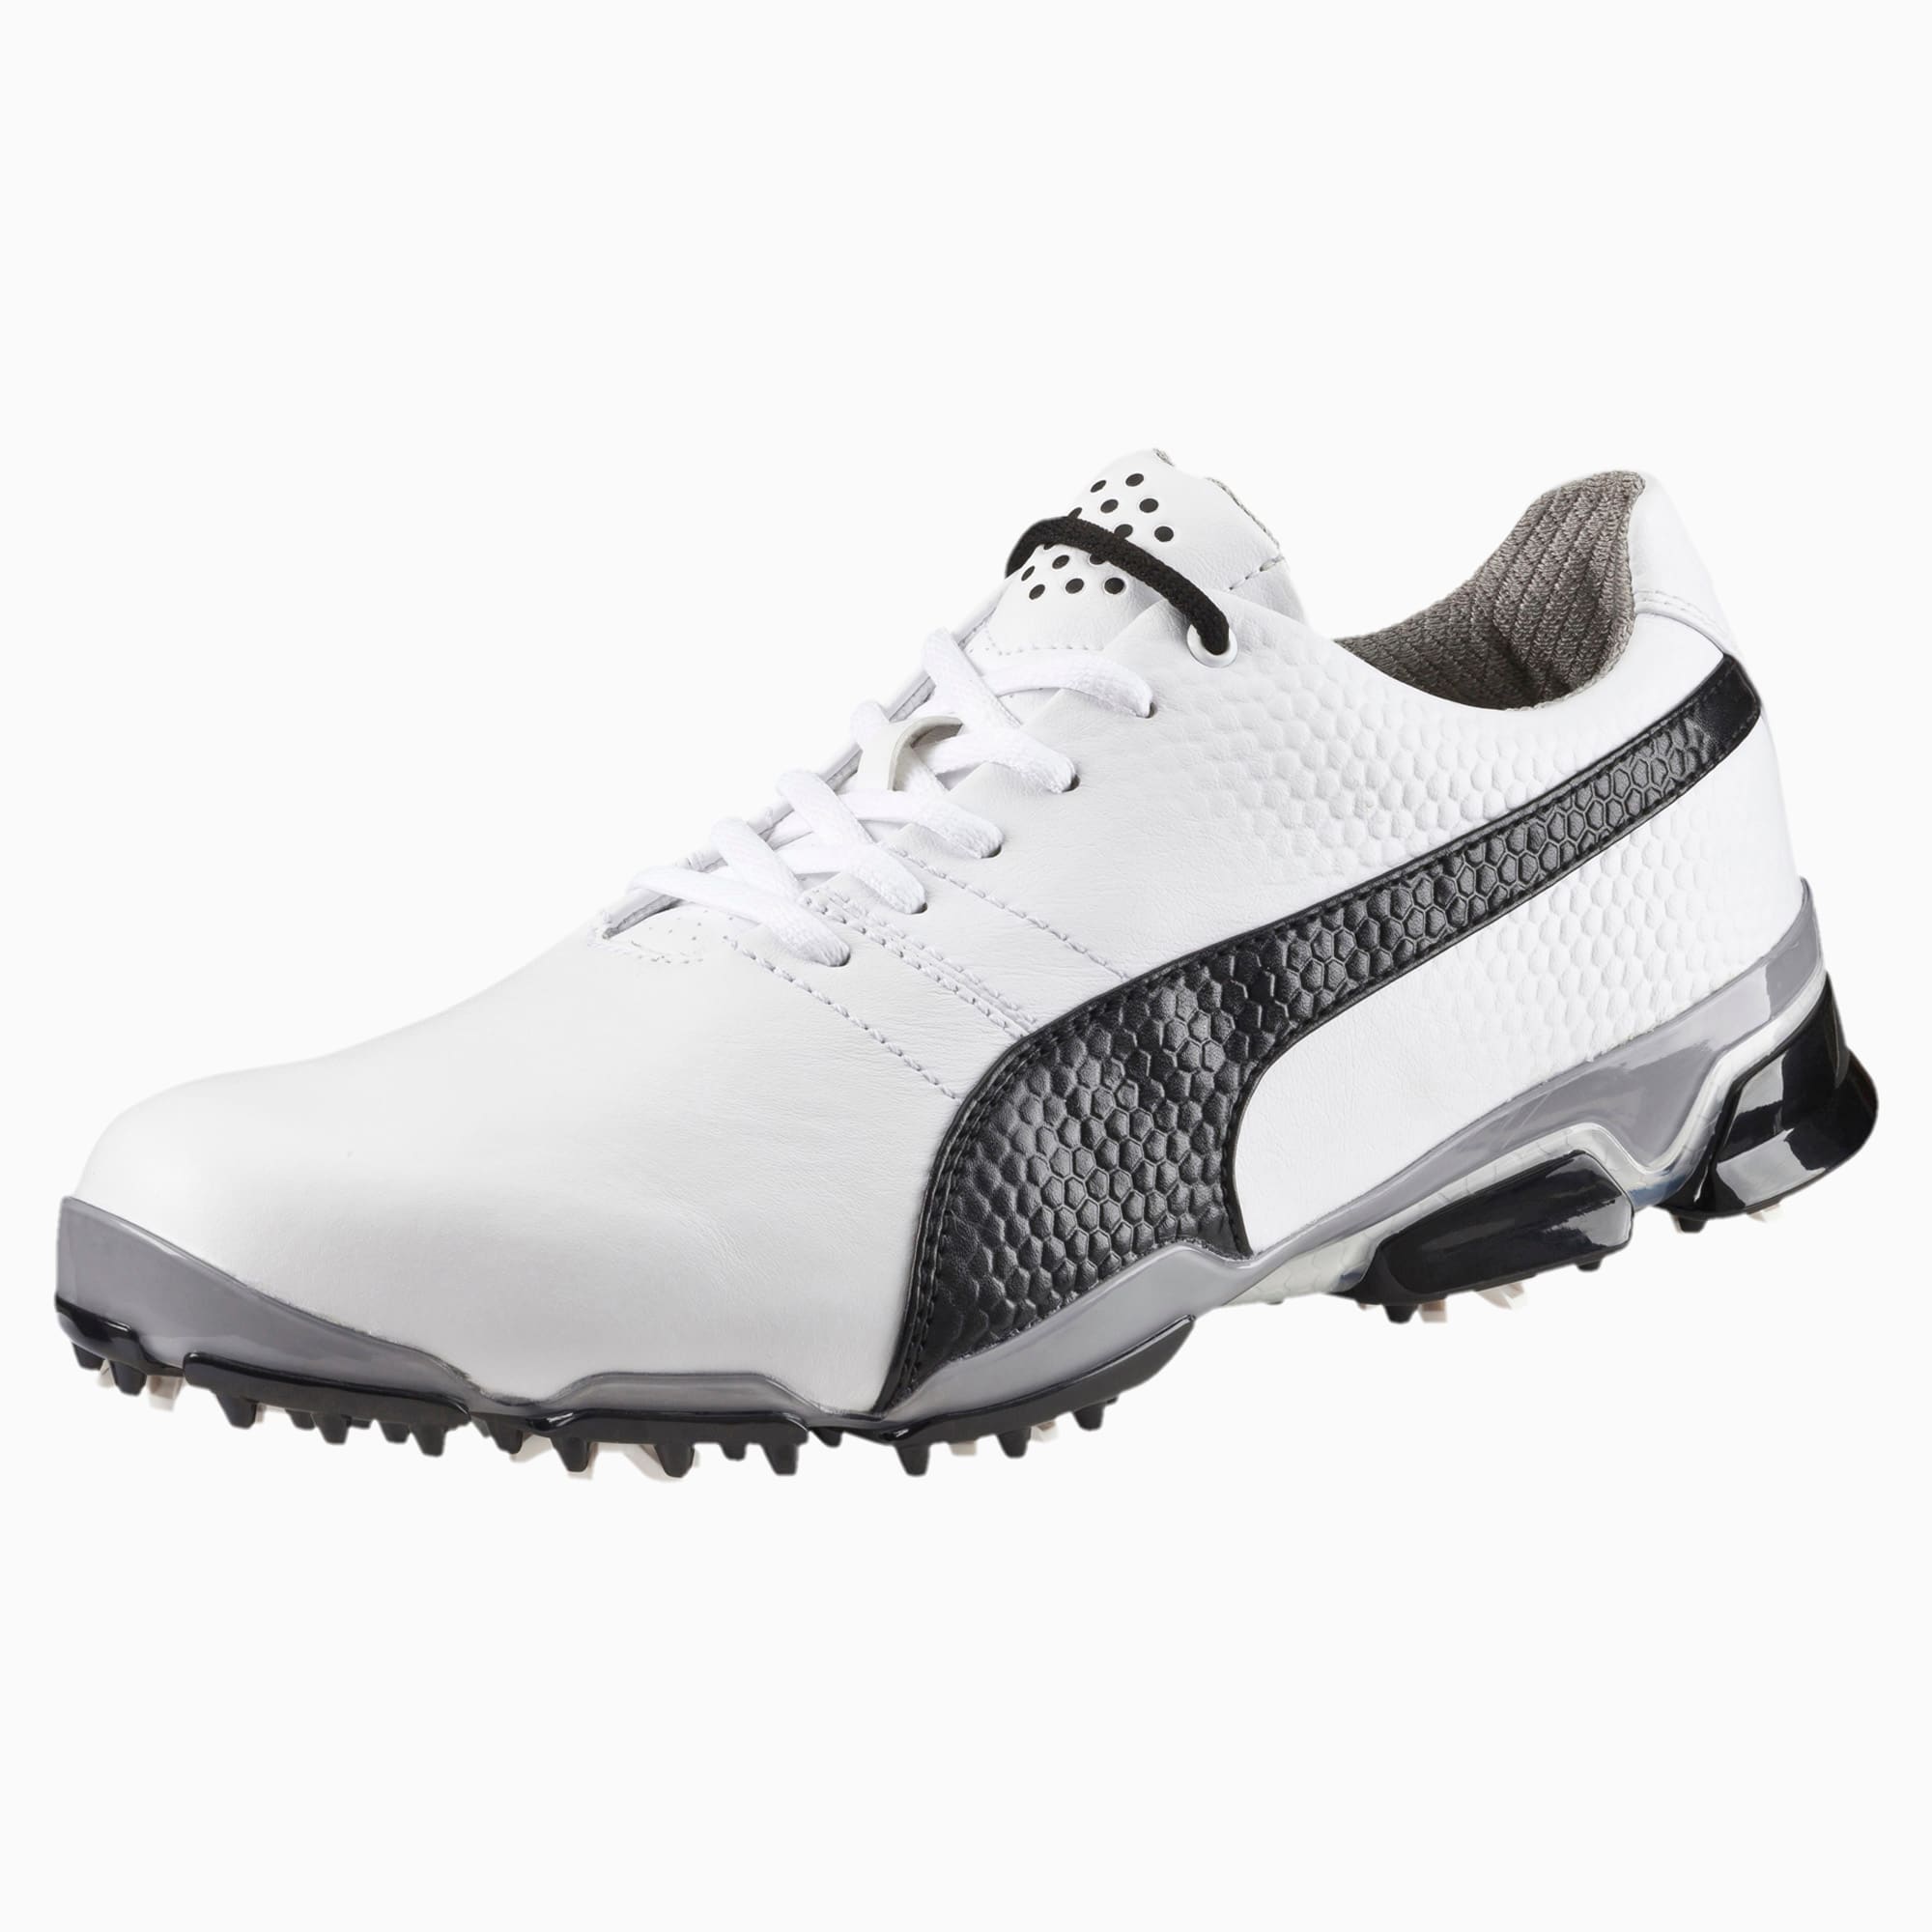 puma men's titantour ignite golf shoes